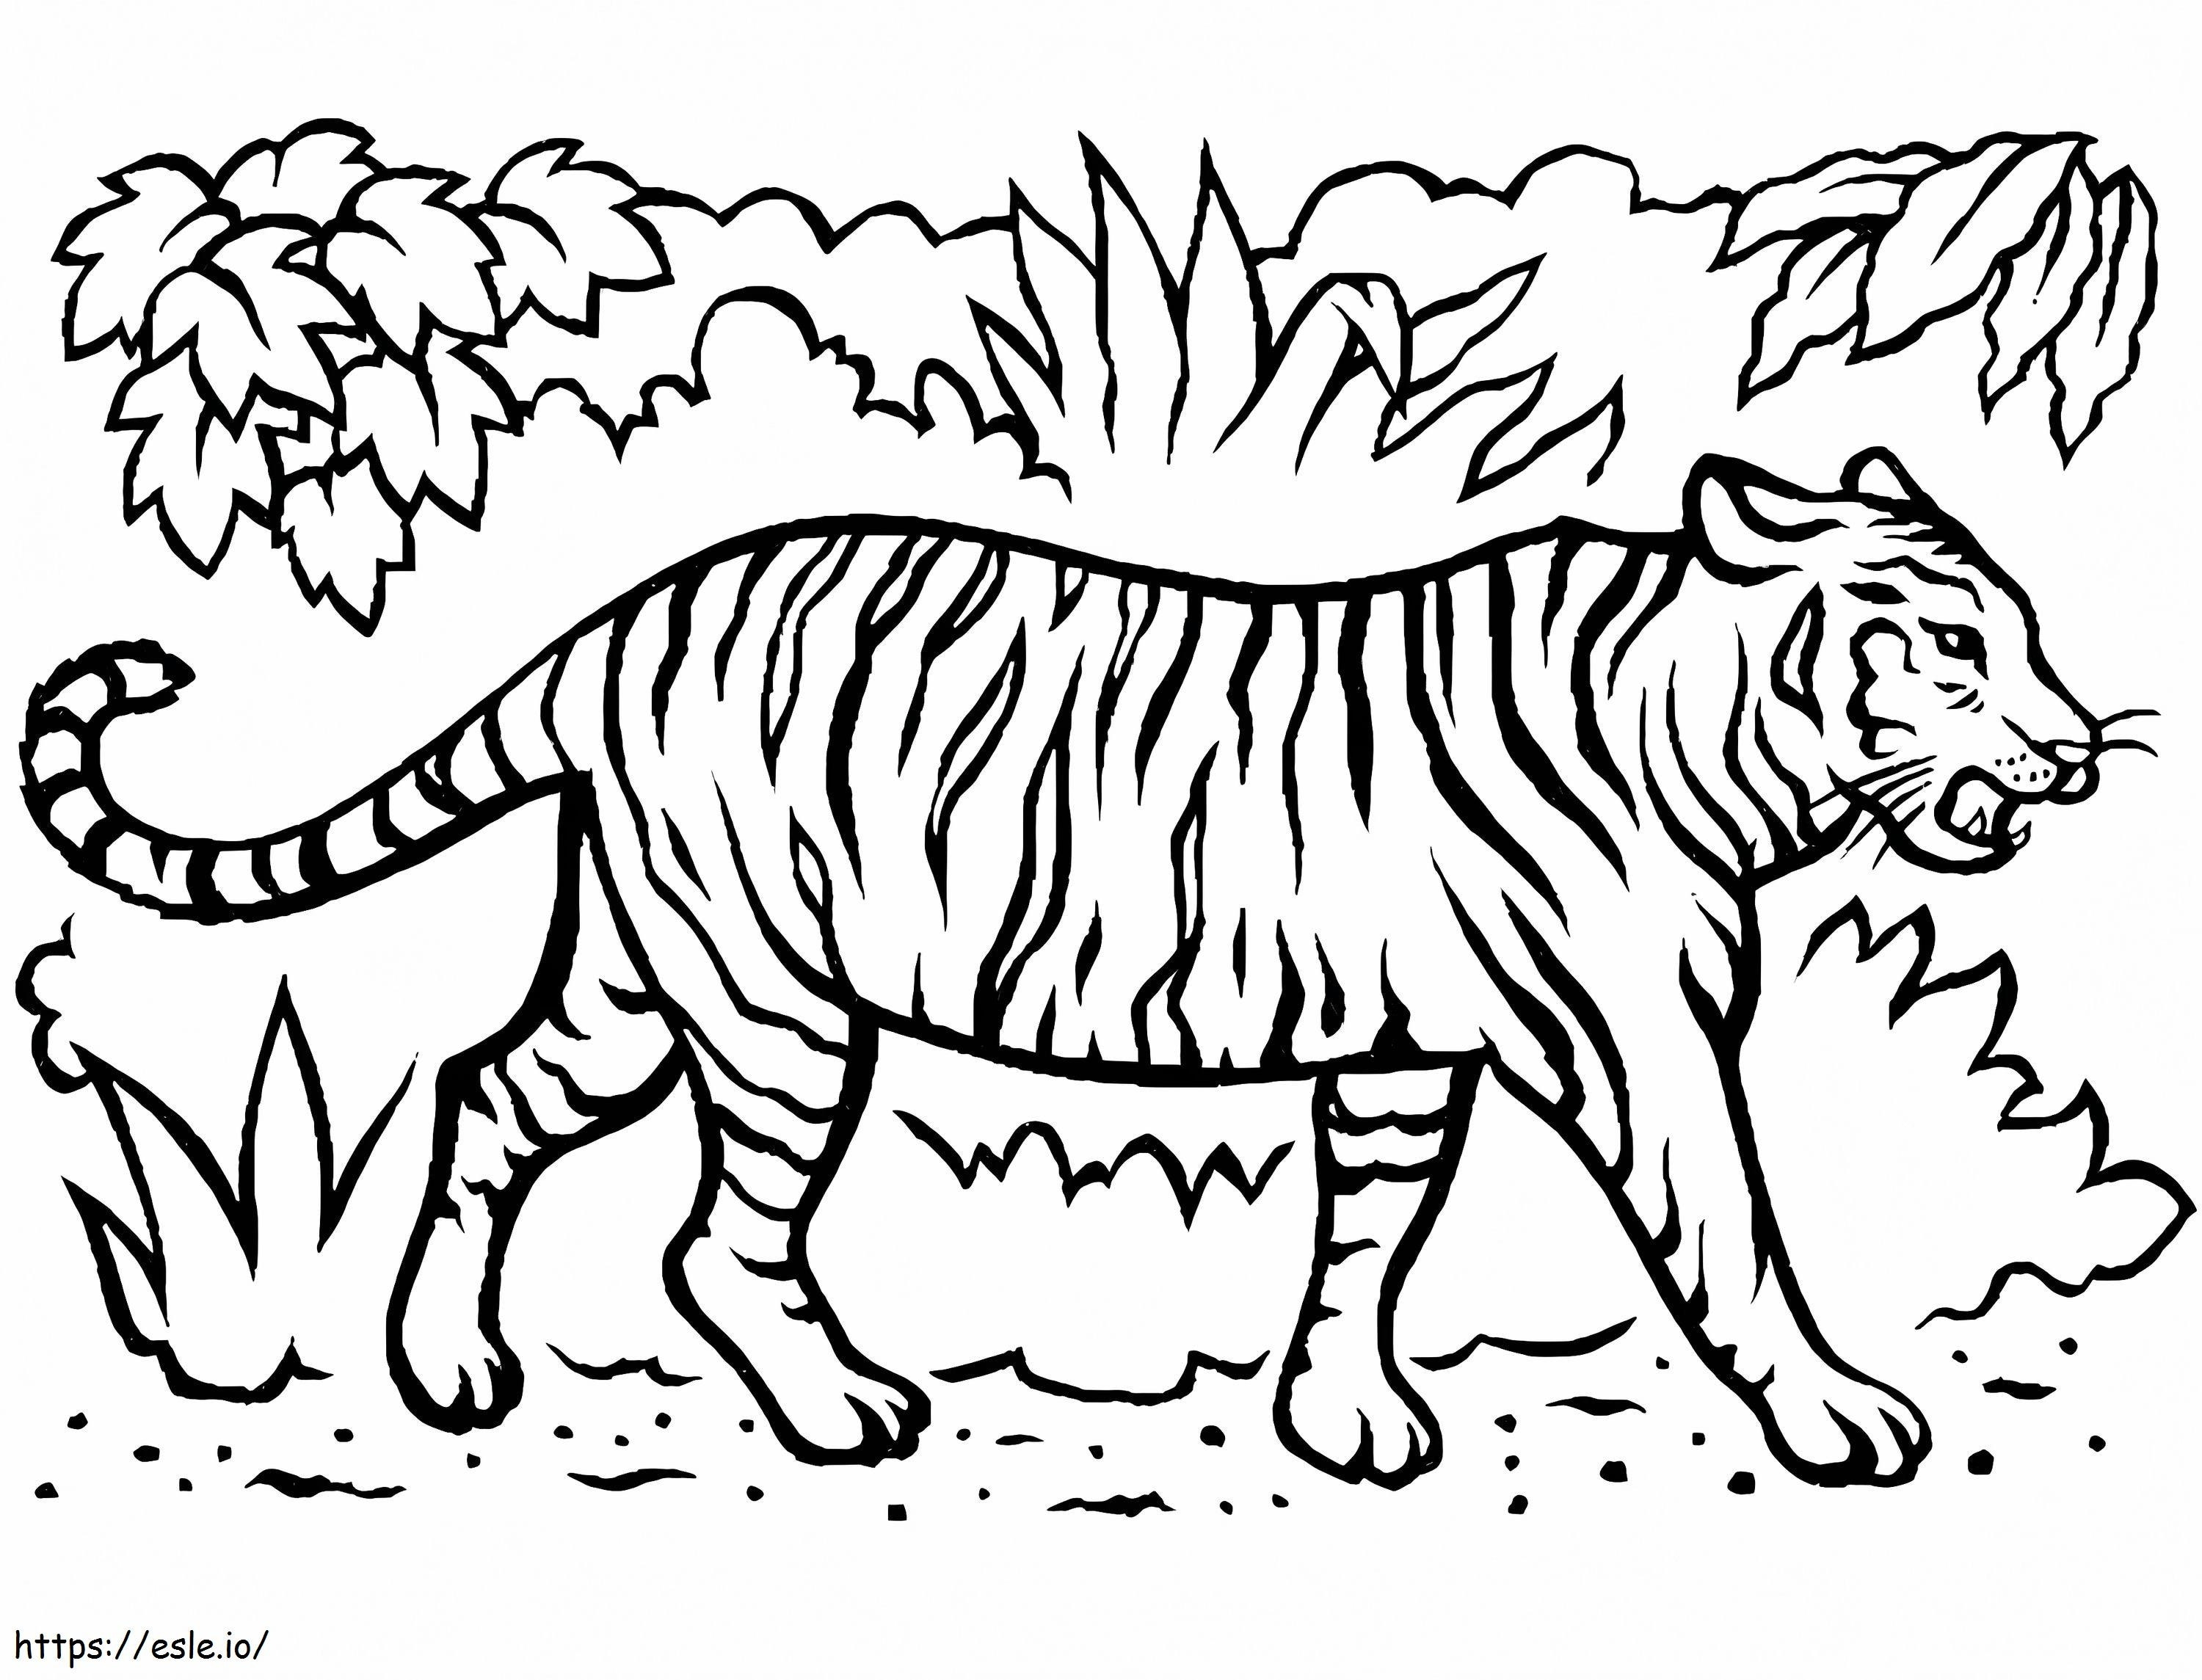 Tiger im Dschungel ausmalbilder